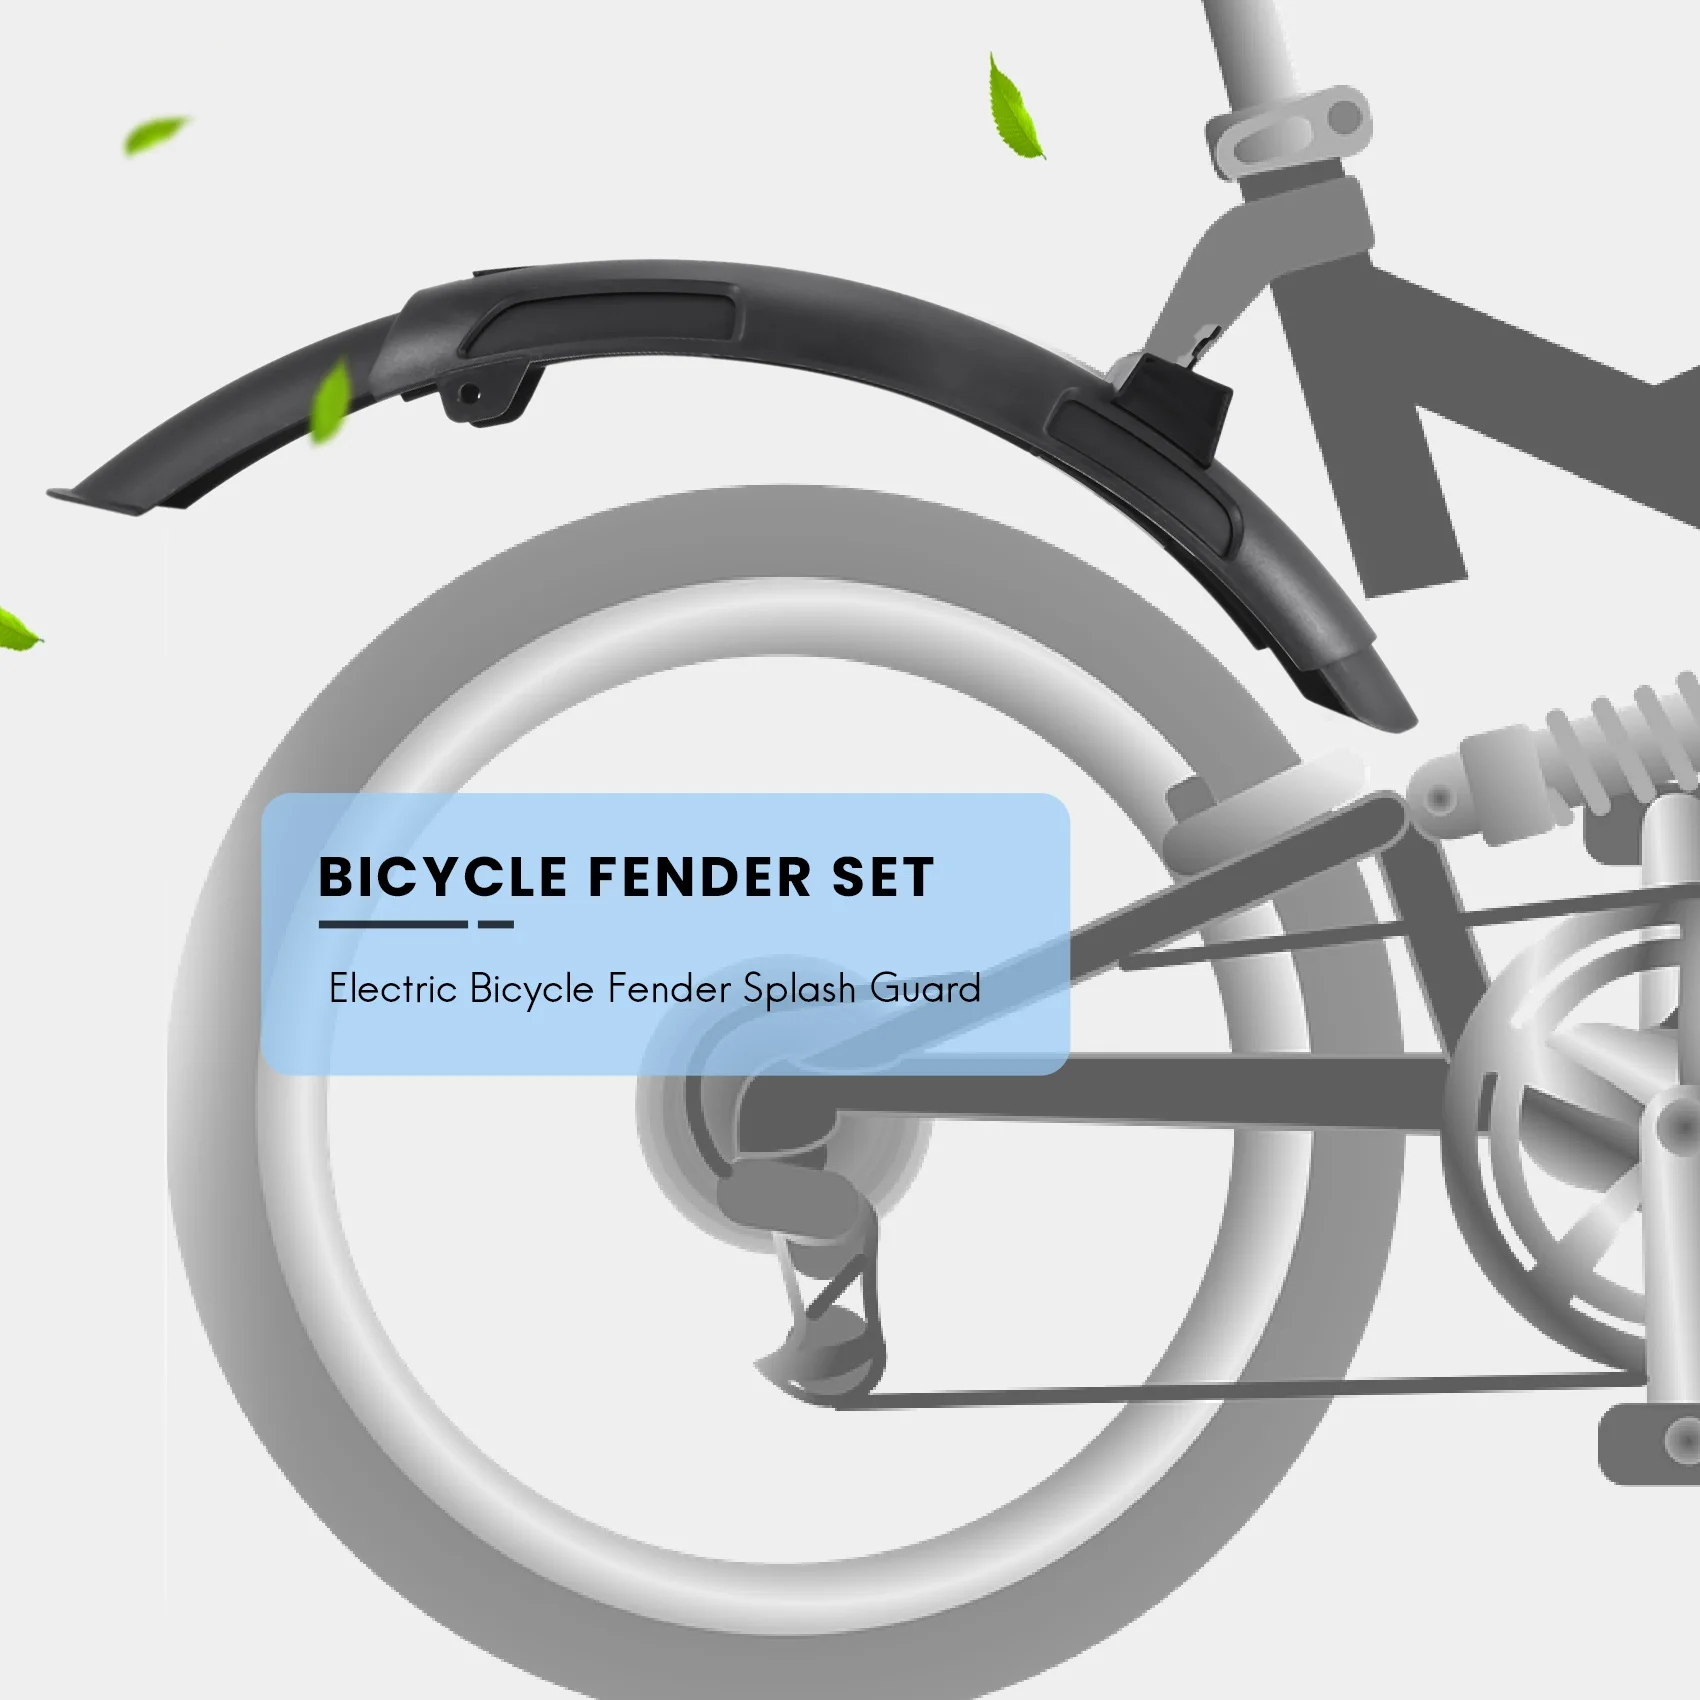 

Брызговик для электрического велосипеда Xiaomi Qicycle EF1